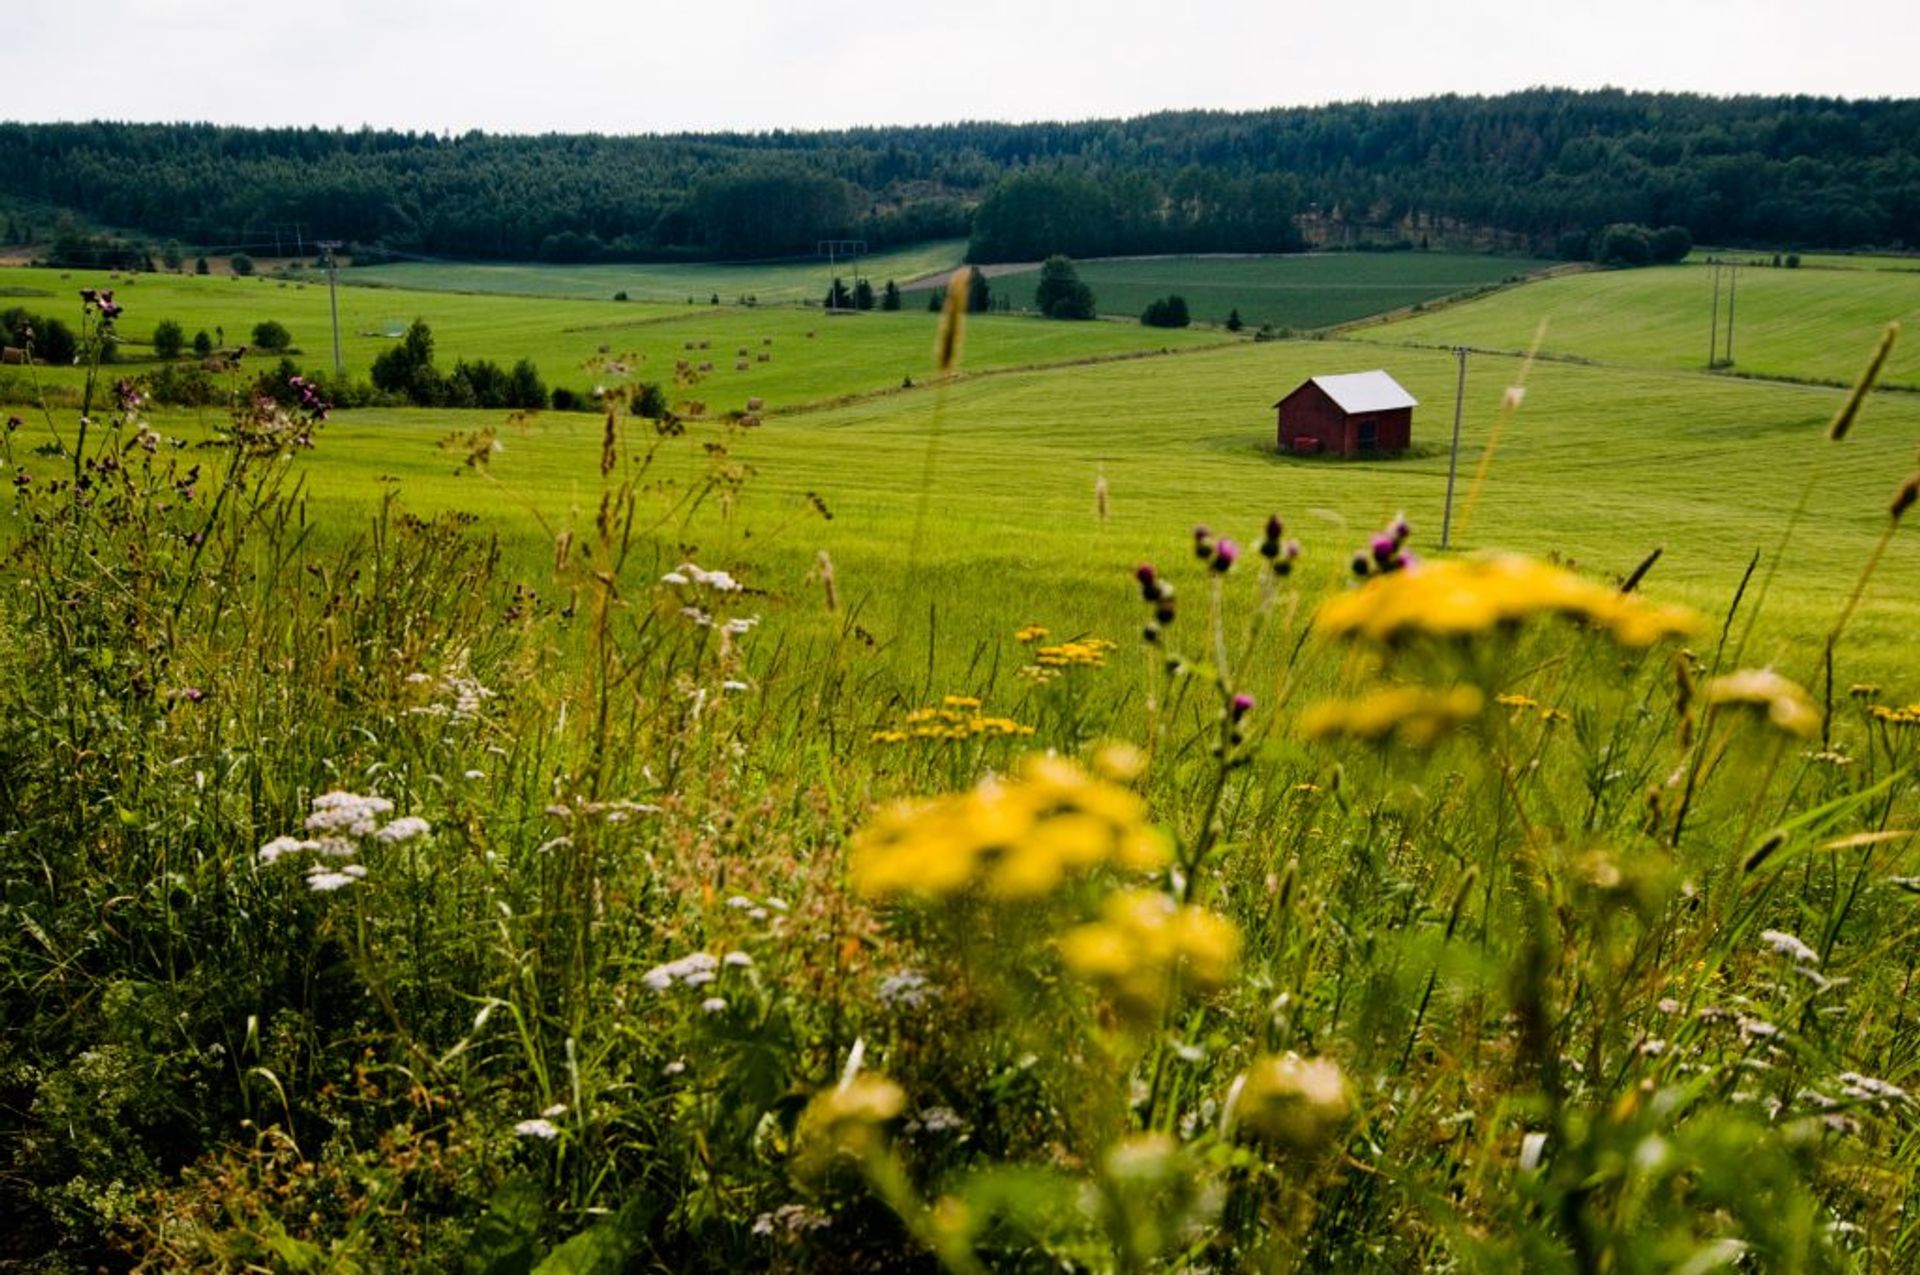 Rural agricultural land in Sweden.